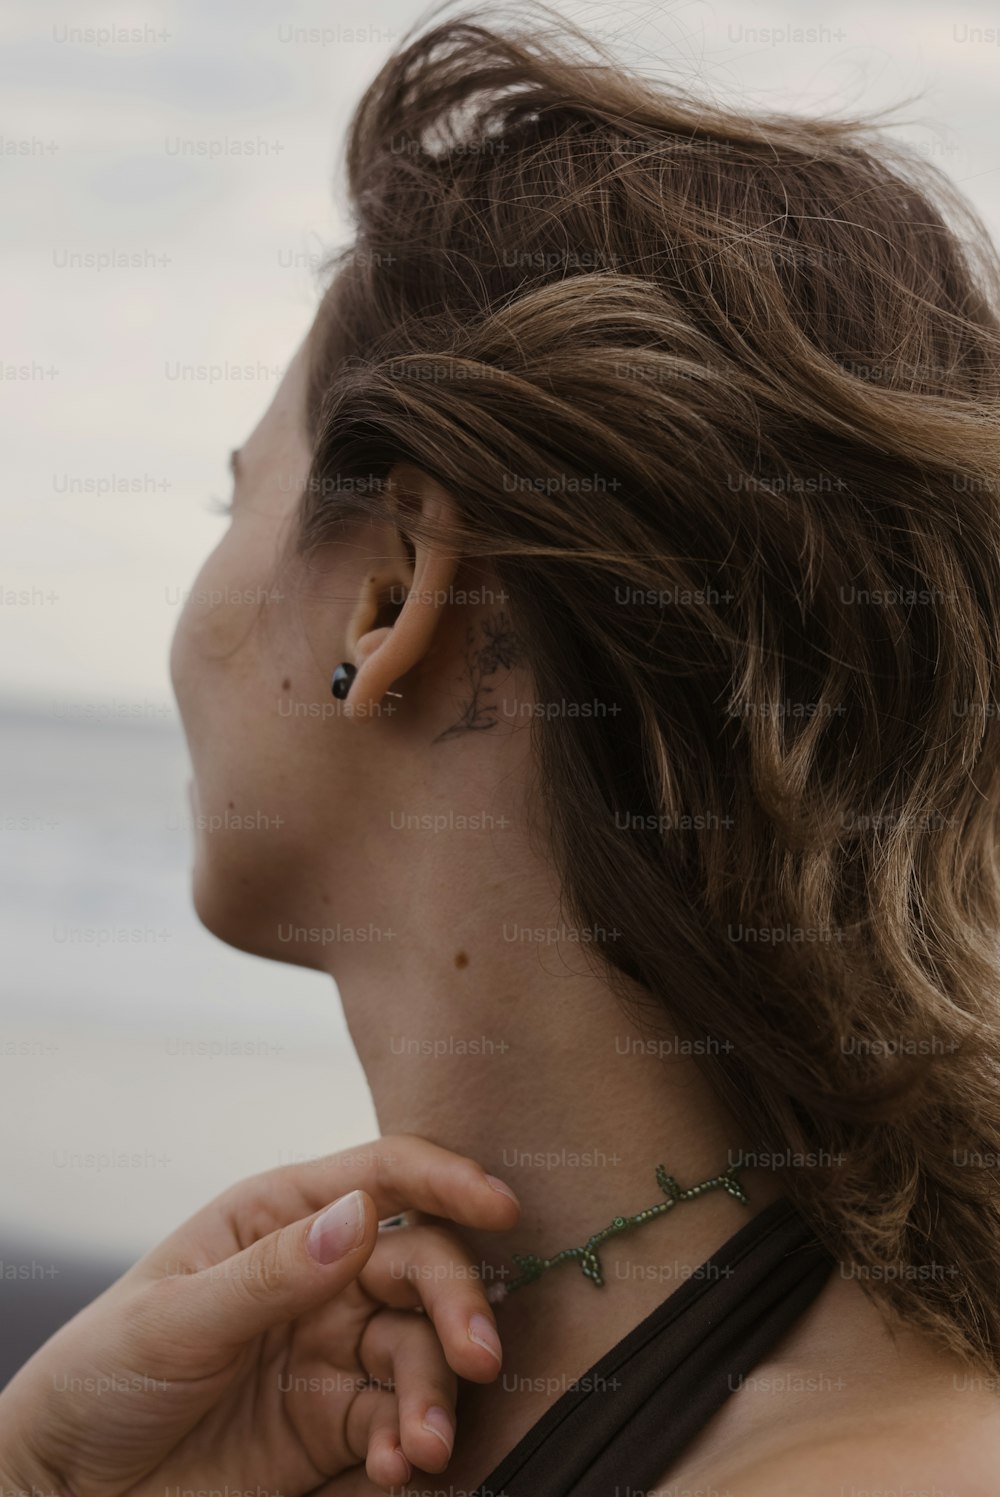 Una mujer con un piercing en la oreja